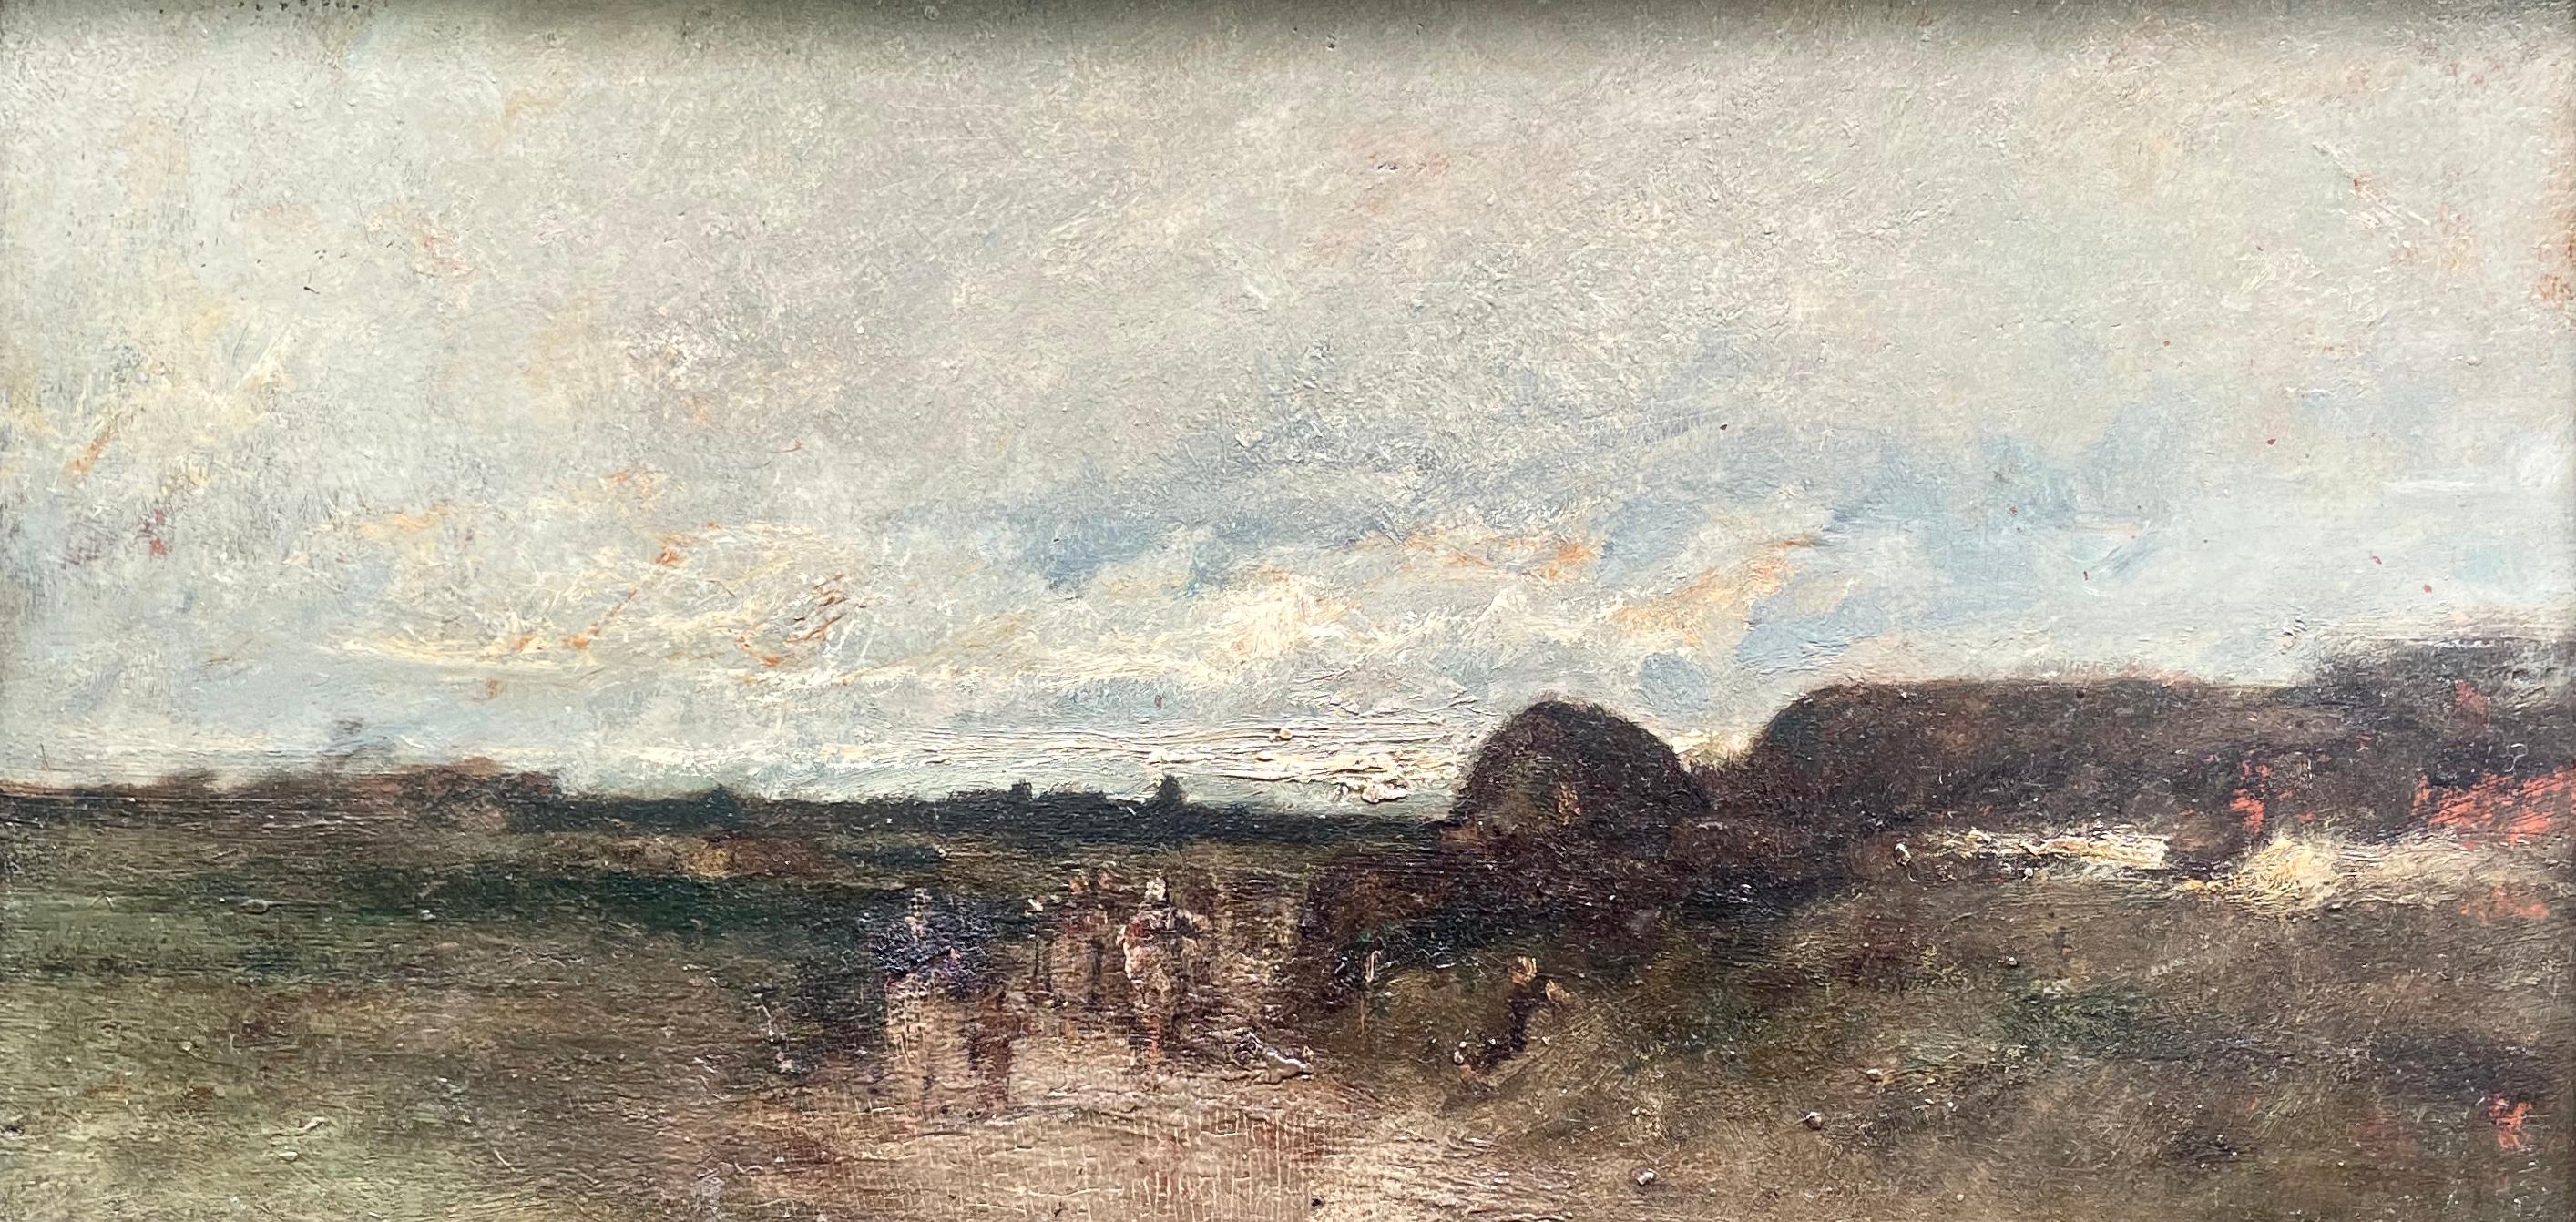 Eugene Isabey (1803-1886) Scène côtière. Signé. Entre romantisme et impressionnisme, influencé par Delacroix et Géricault, Isabey passe beaucoup de temps sur la côte normande à dessiner et à peindre. Cette peinture à l'huile automnale aux teintes